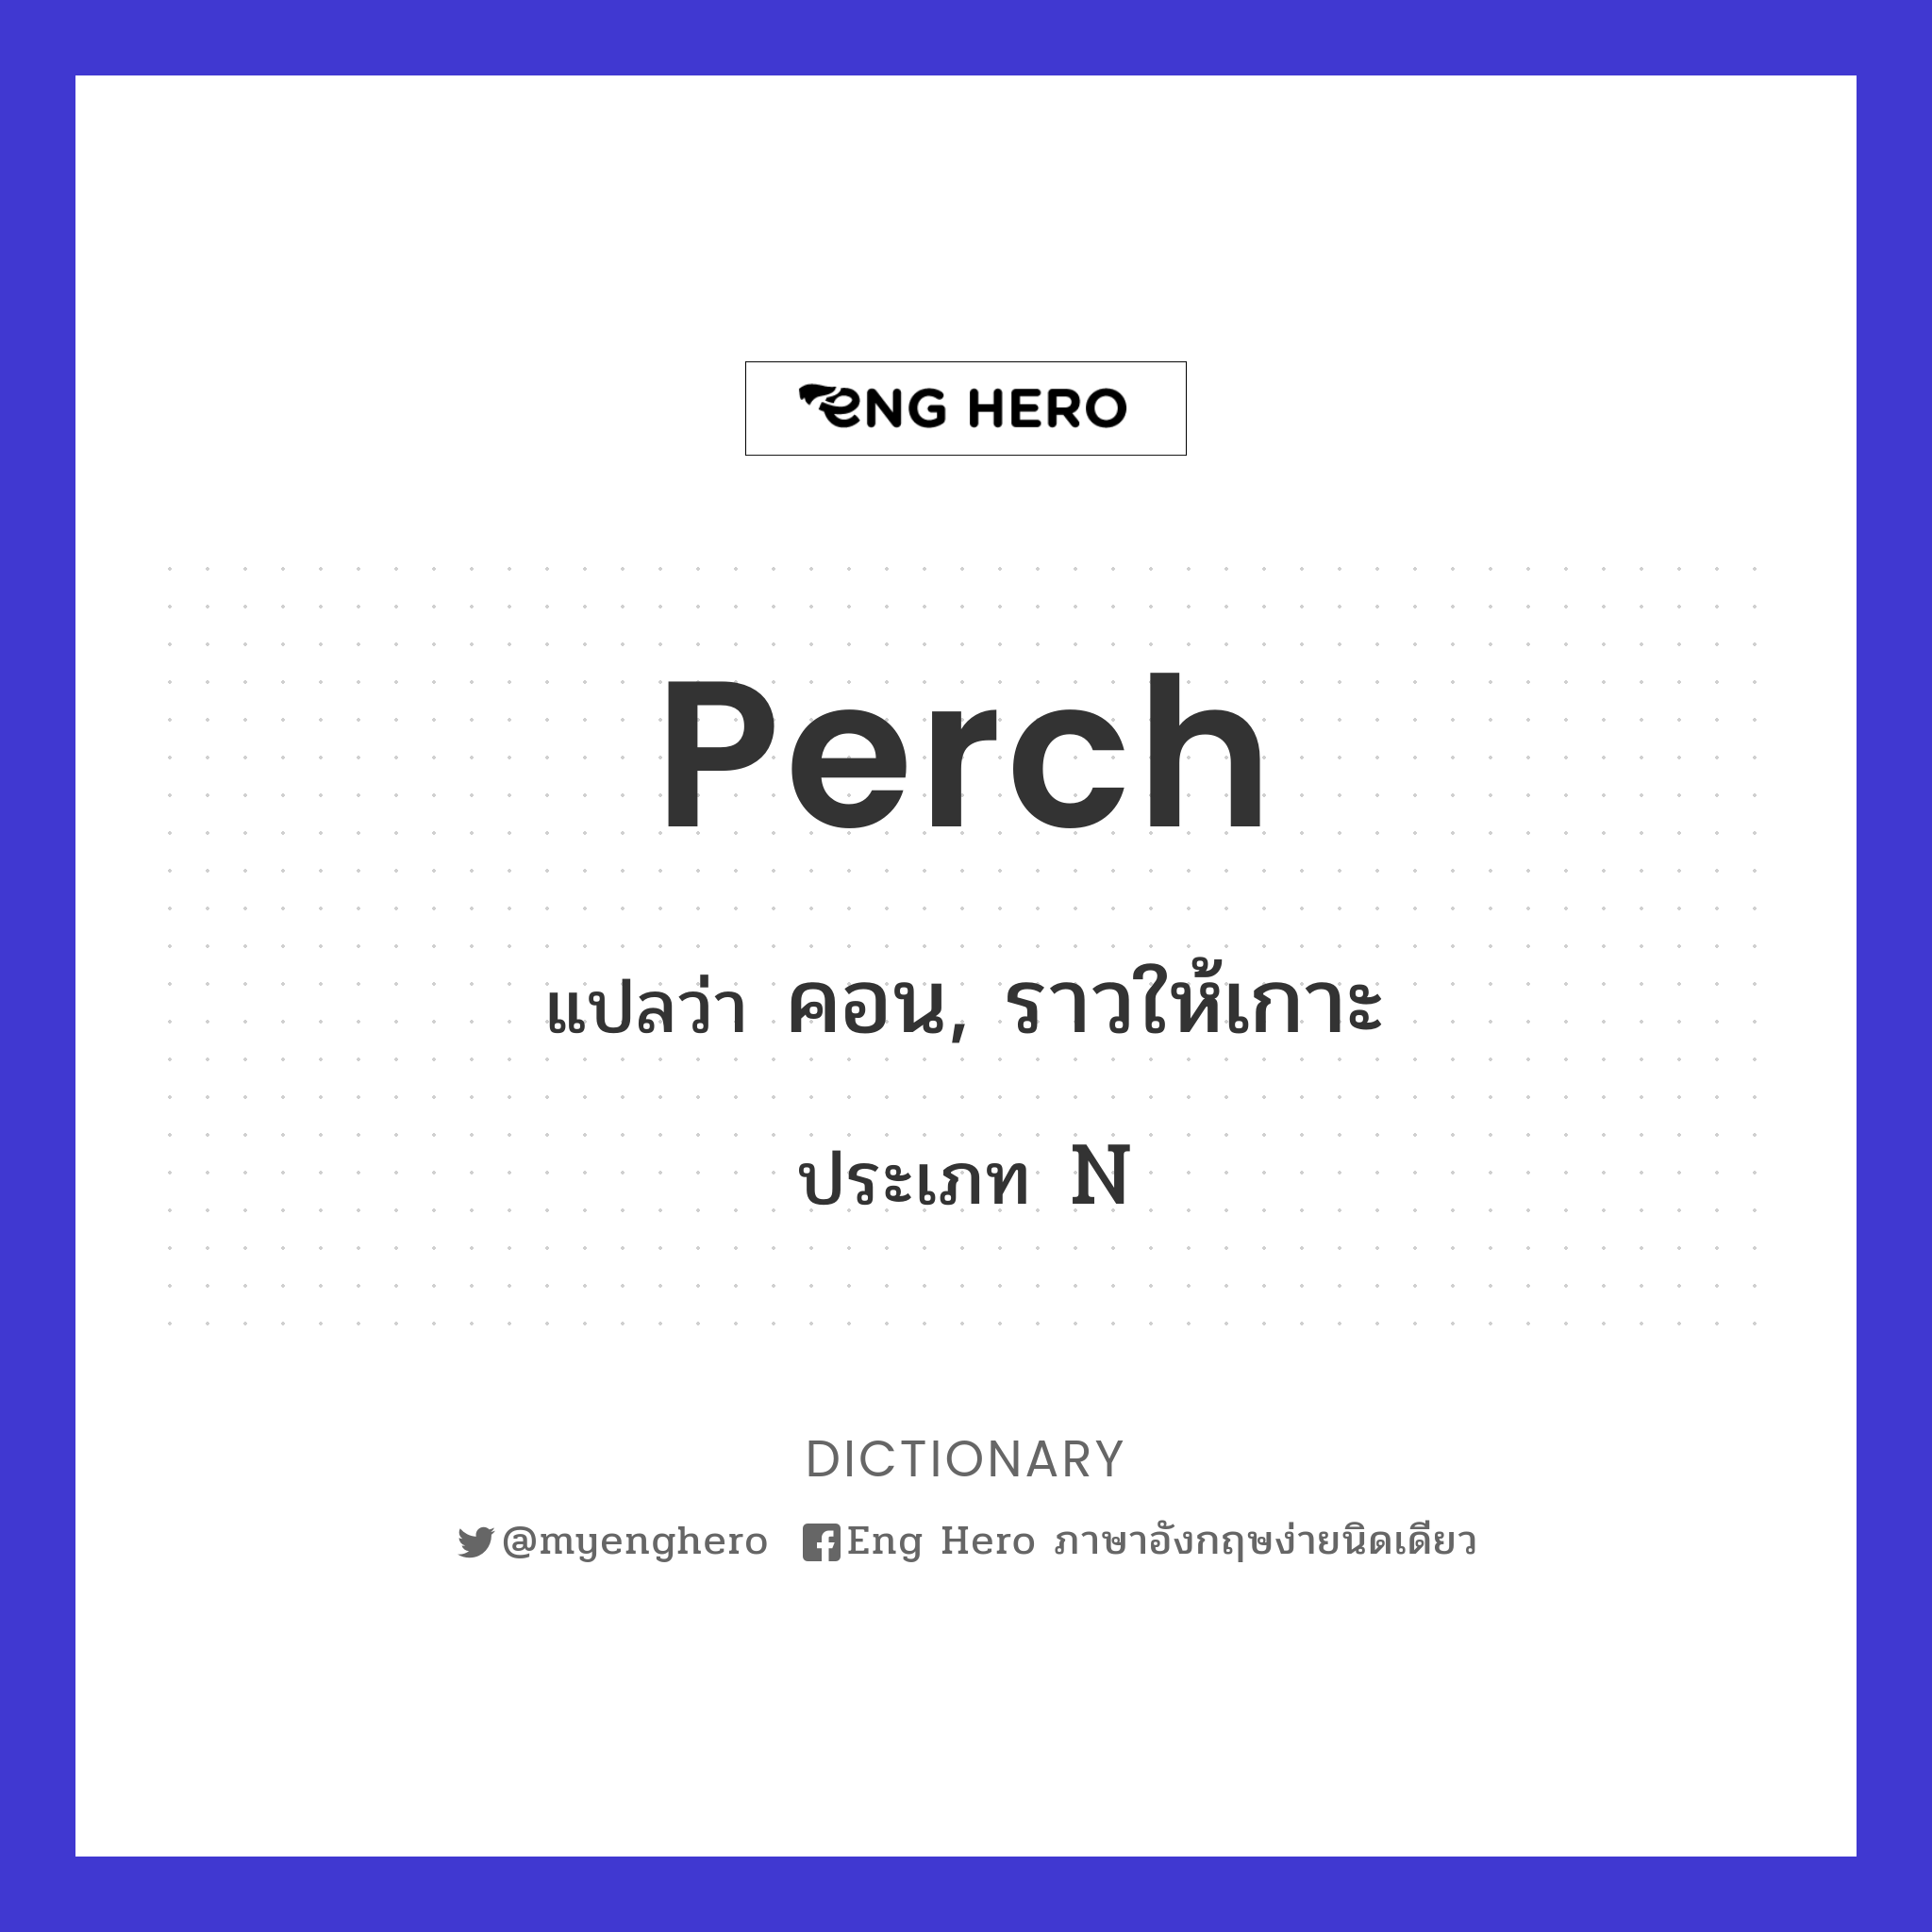 perch